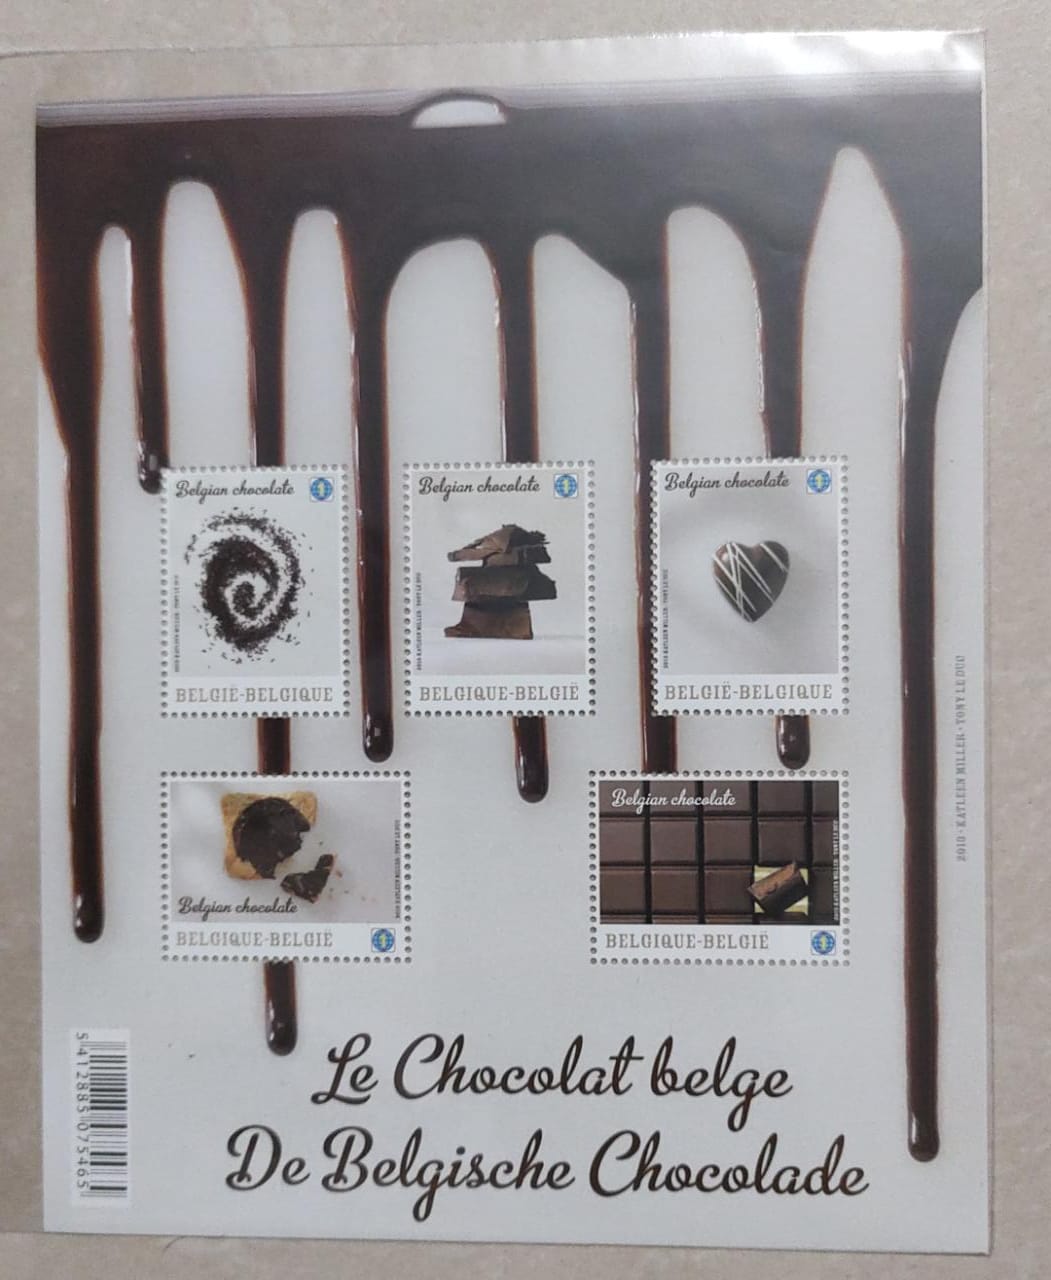 बेल्जियम - विश्व की सर्वोत्तम चॉकलेट का उत्पादक। 2013 में बोप्प में जारी किया गया